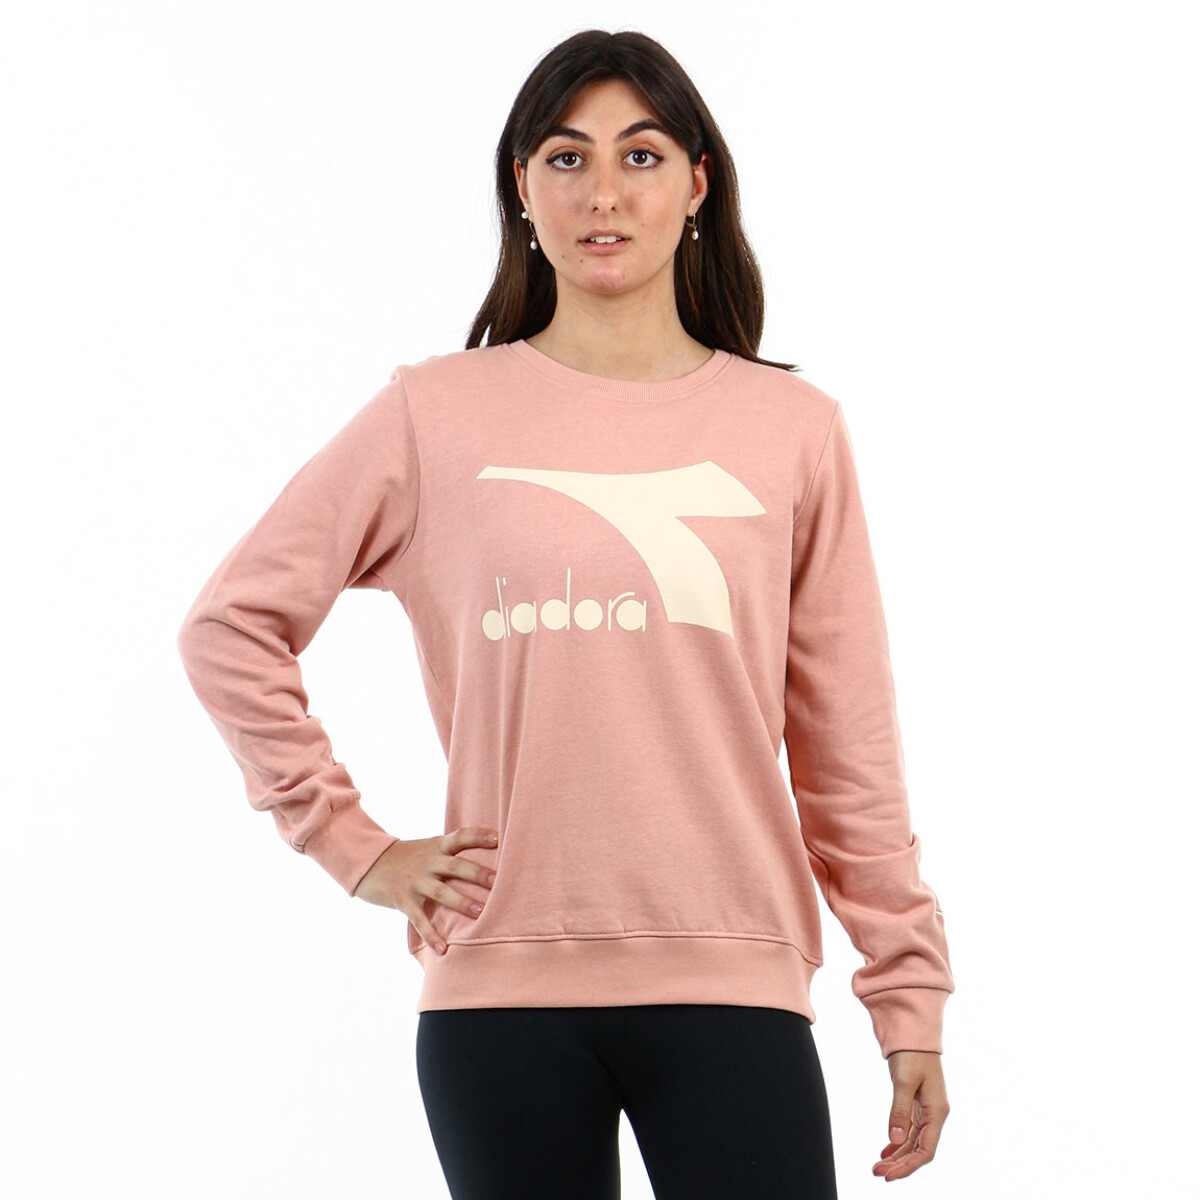 Diadora Ladies Cotton Crew Neck Sweater- Old Pink - Rosa Viejo 